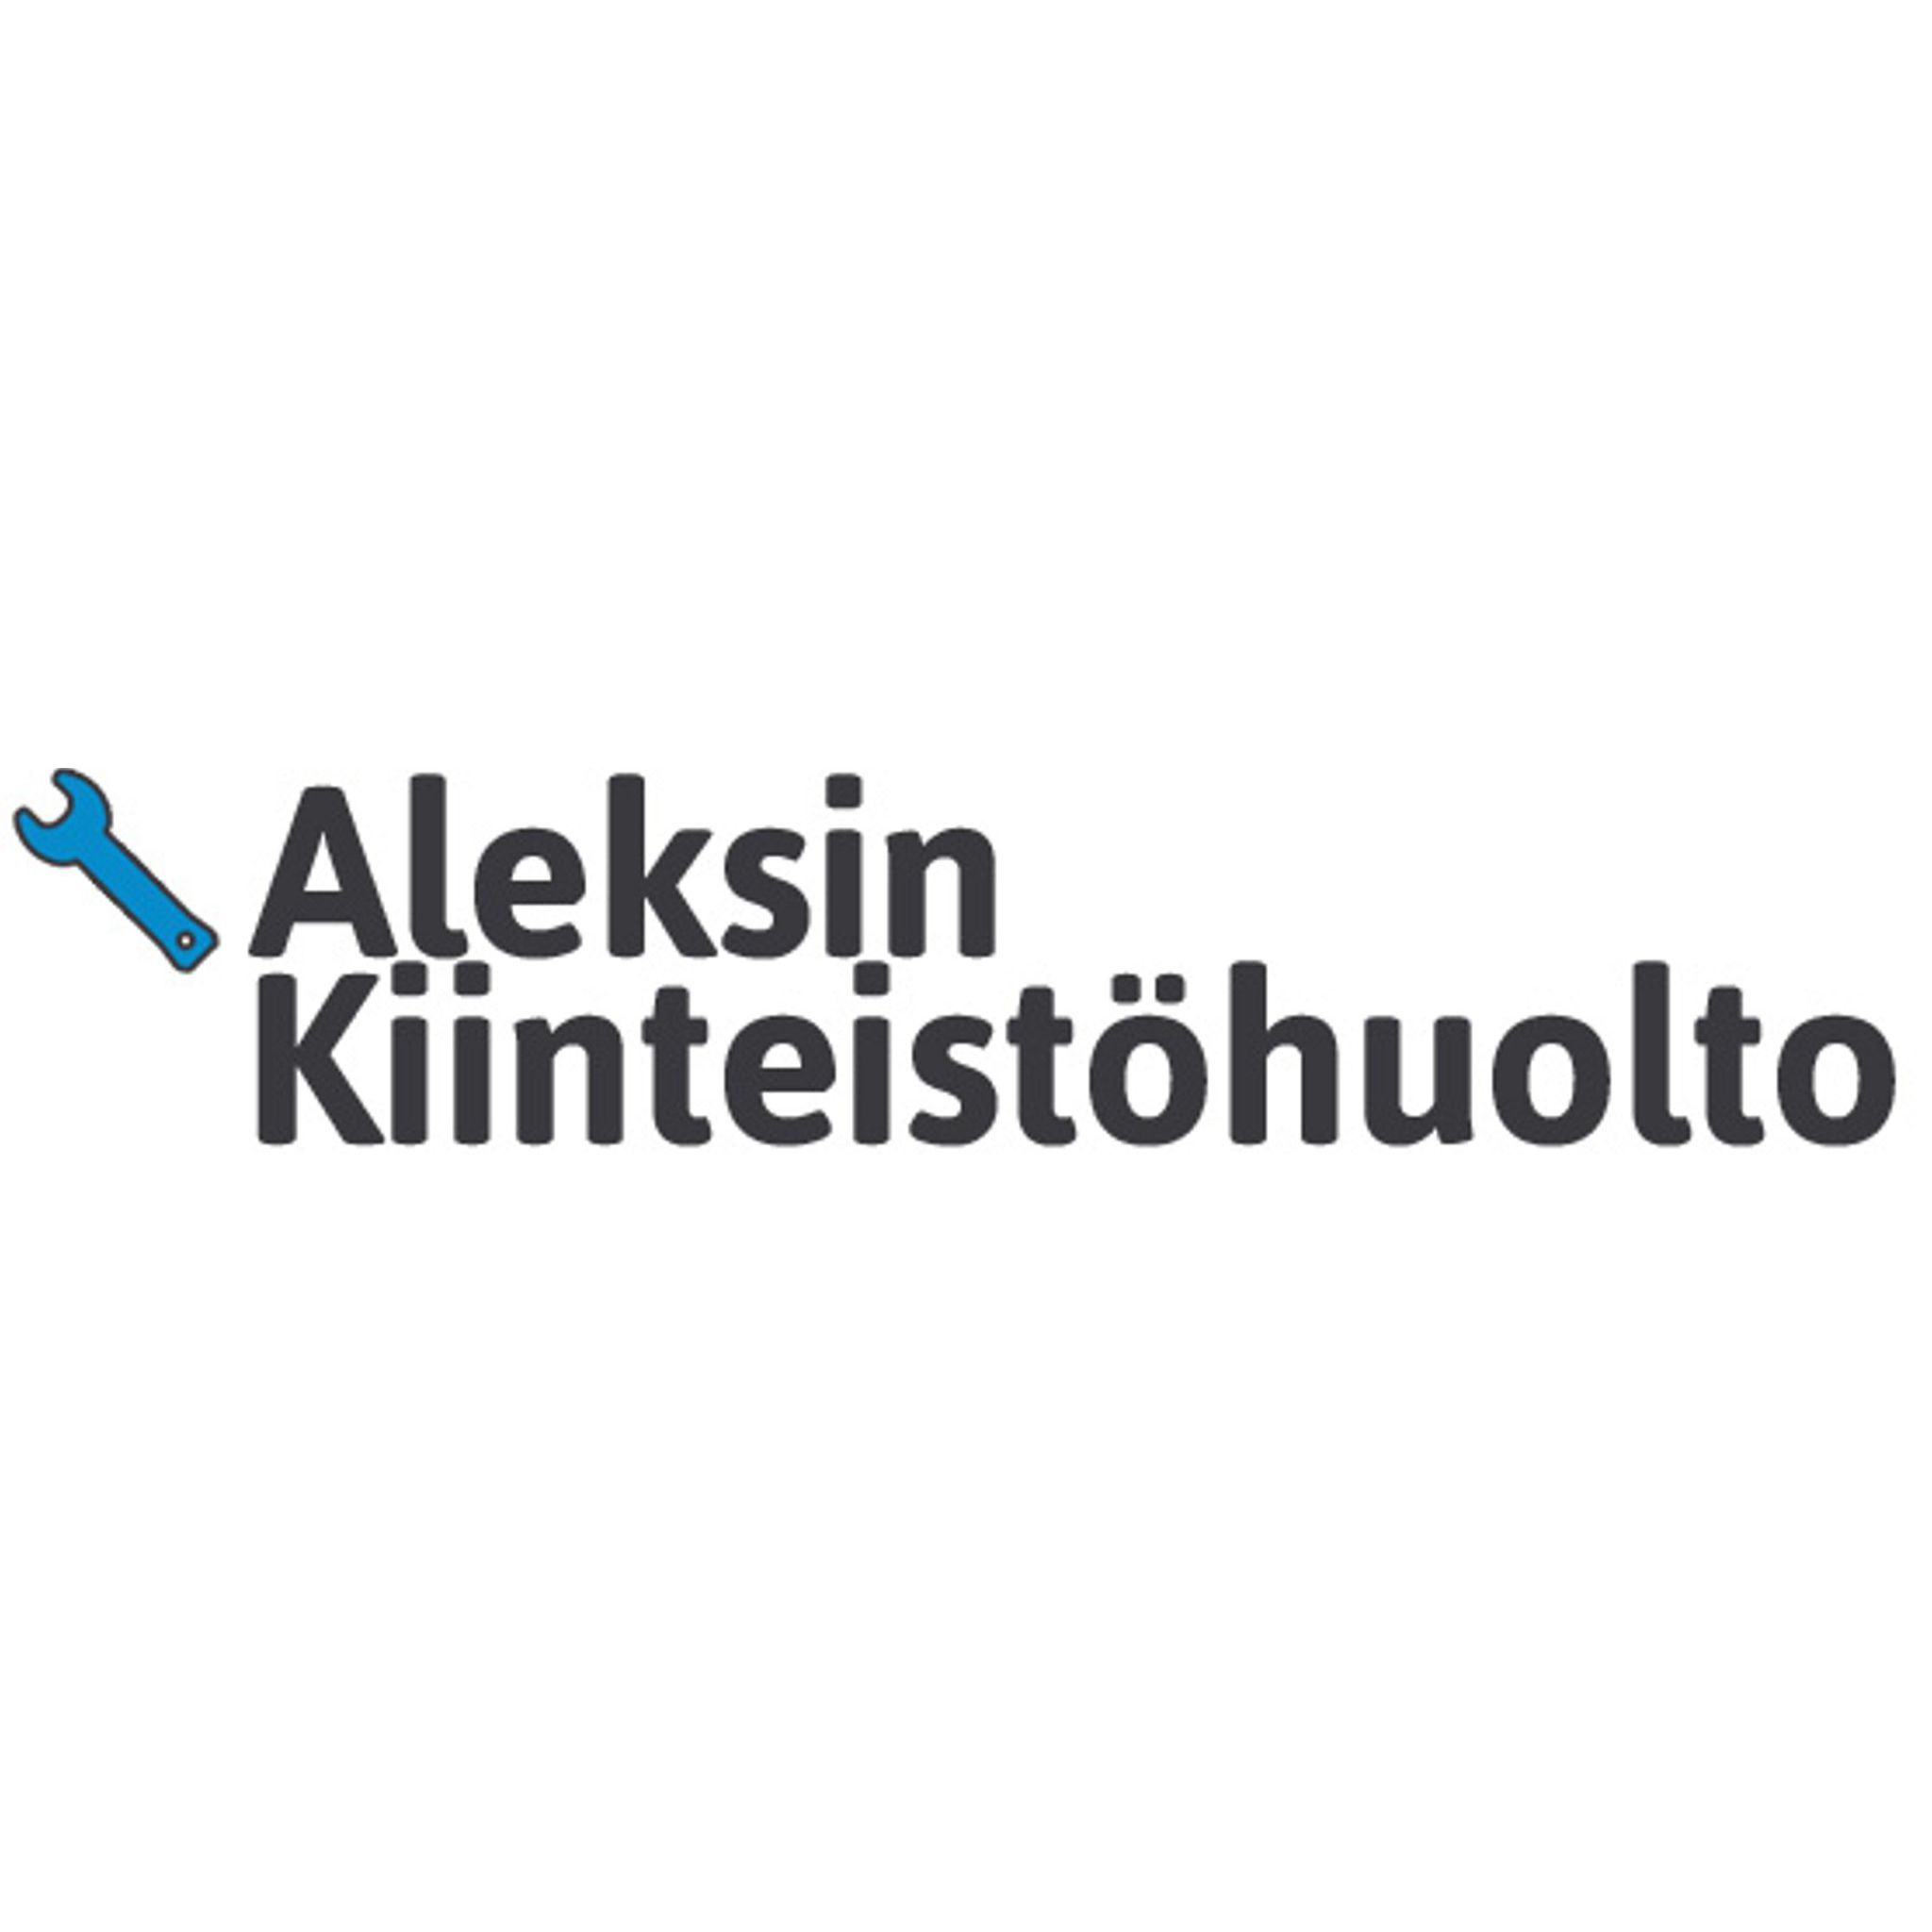 Aleksin Kiinteistöhuolto Logo